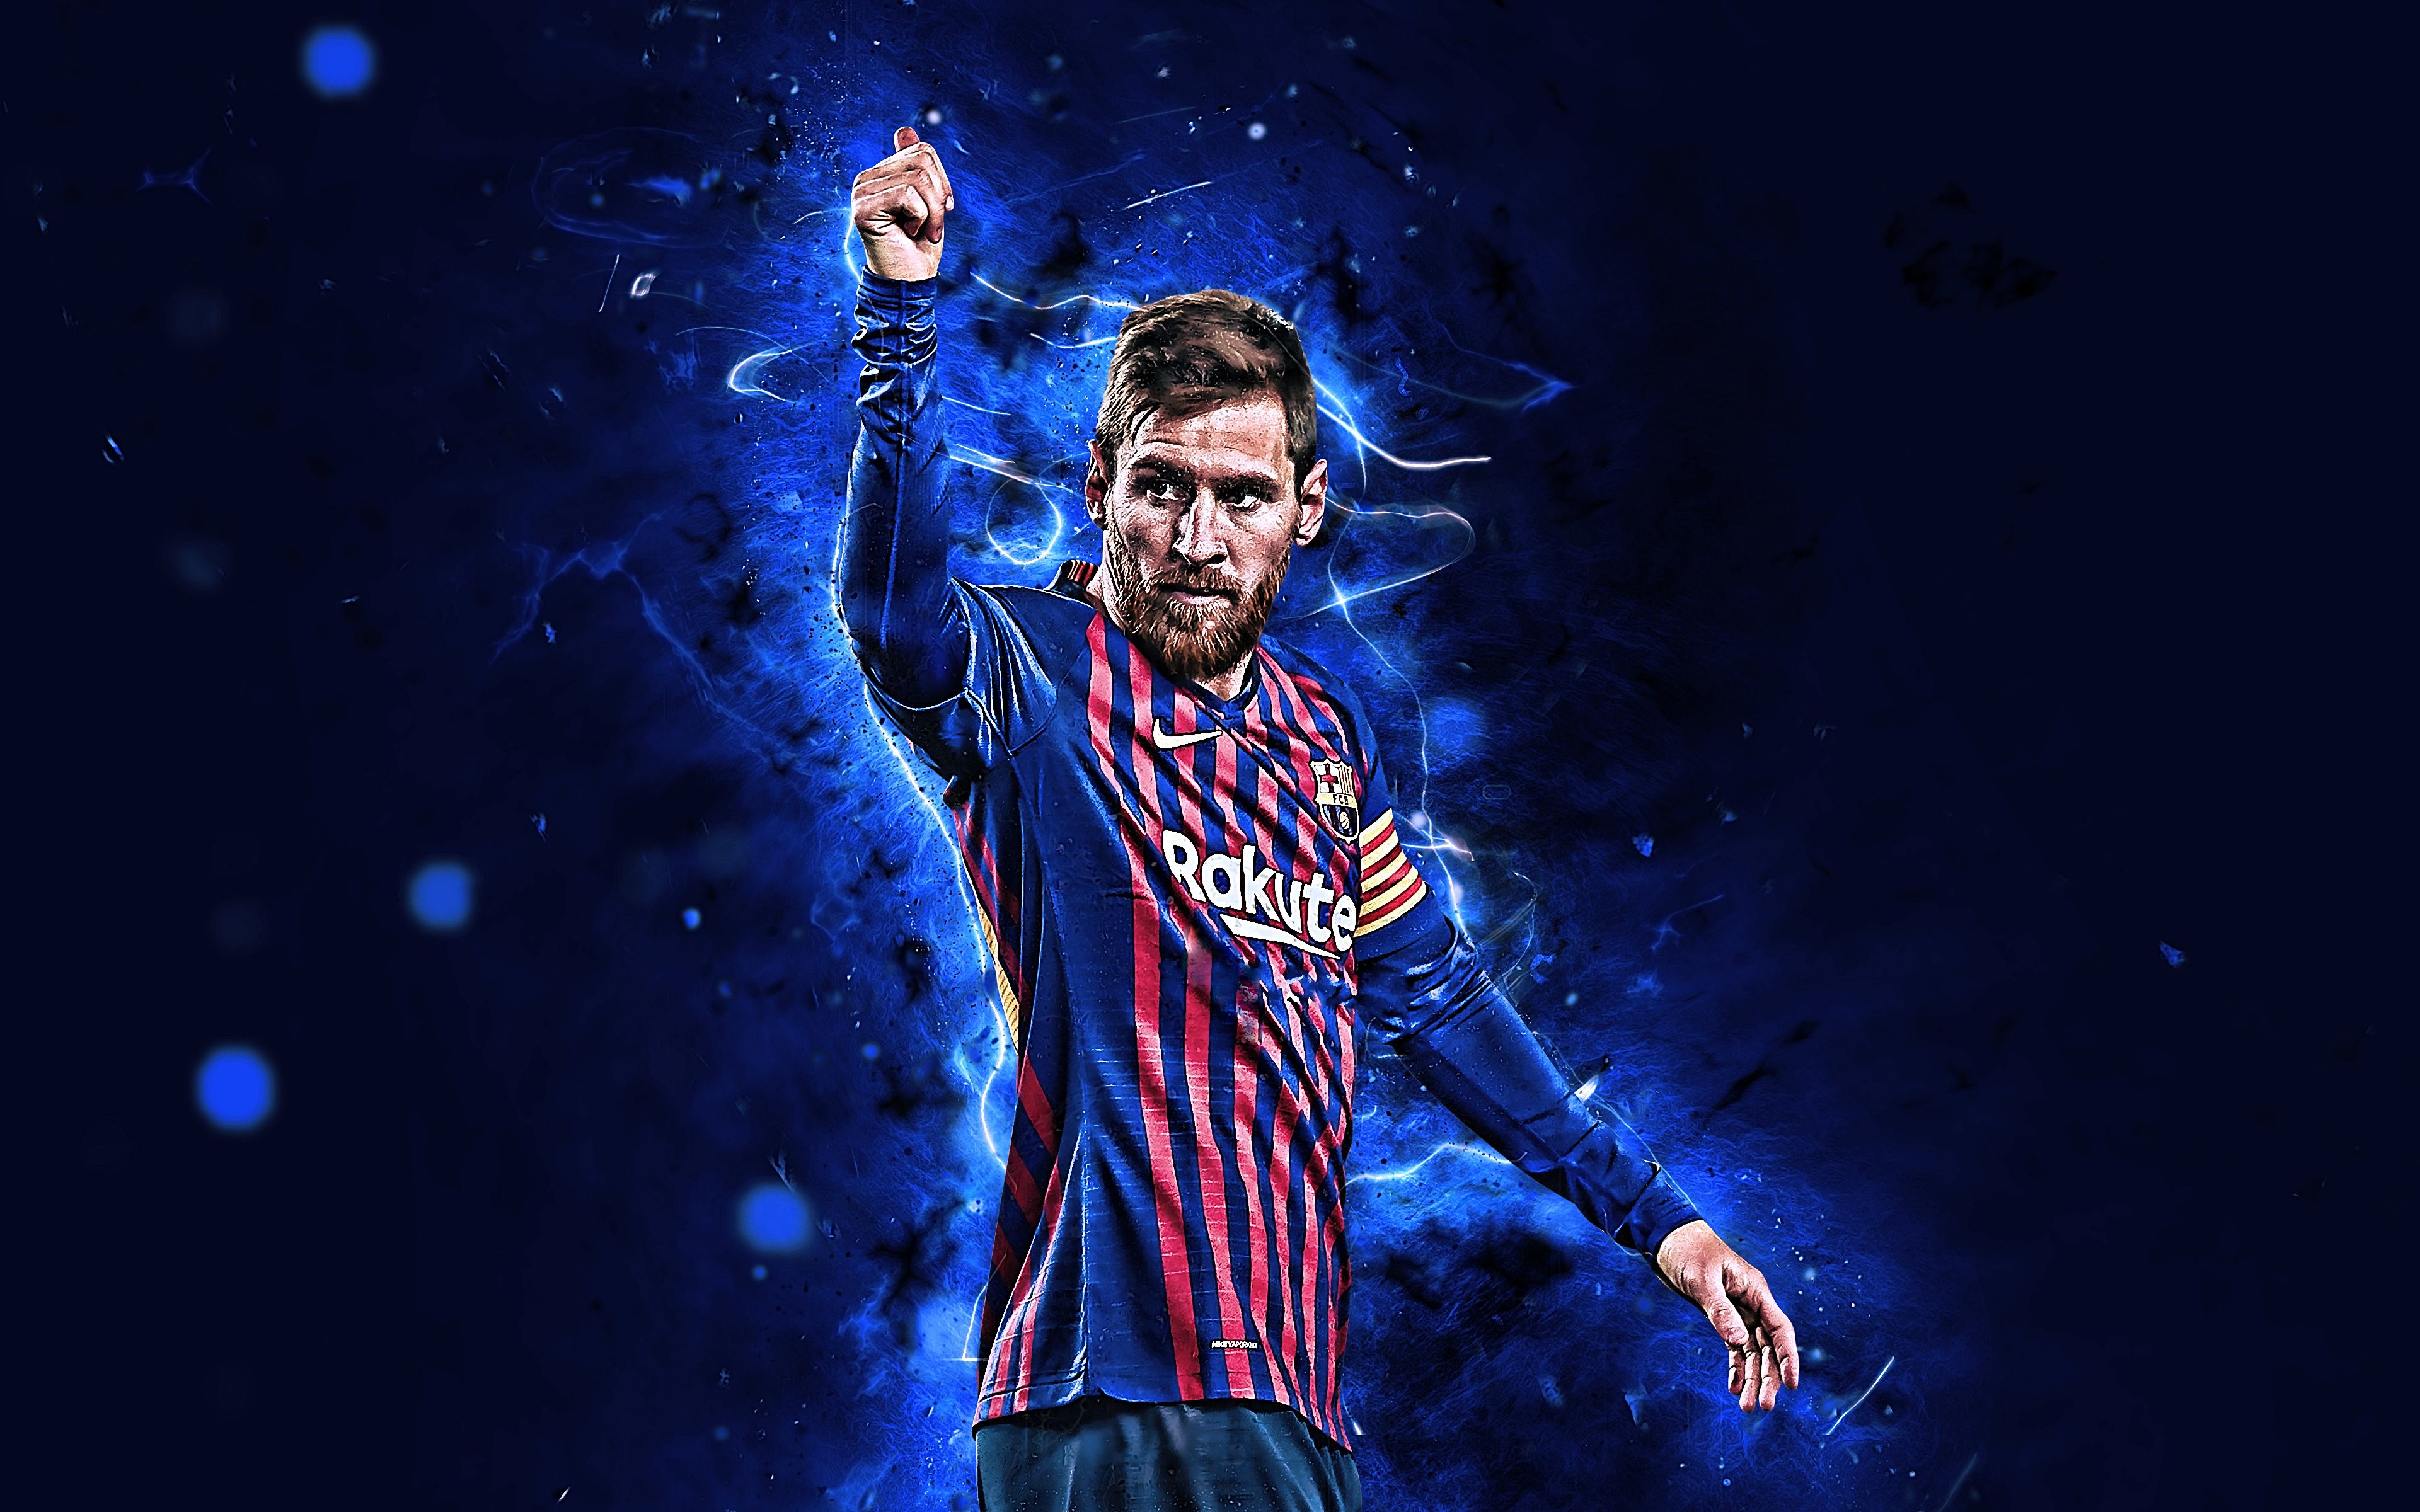 Với độ phân giải 4k rực rỡ và hình ảnh chân thực, hình nền Messi sẽ đưa bạn đến gần hơn với ngôi sao bóng đá hàng đầu thế giới này. Cảm nhận sự tuyệt vời của vẻ đẹp trai và kỹ năng siêu hạng của Messi ngay tại chiếc điện thoại của bạn.